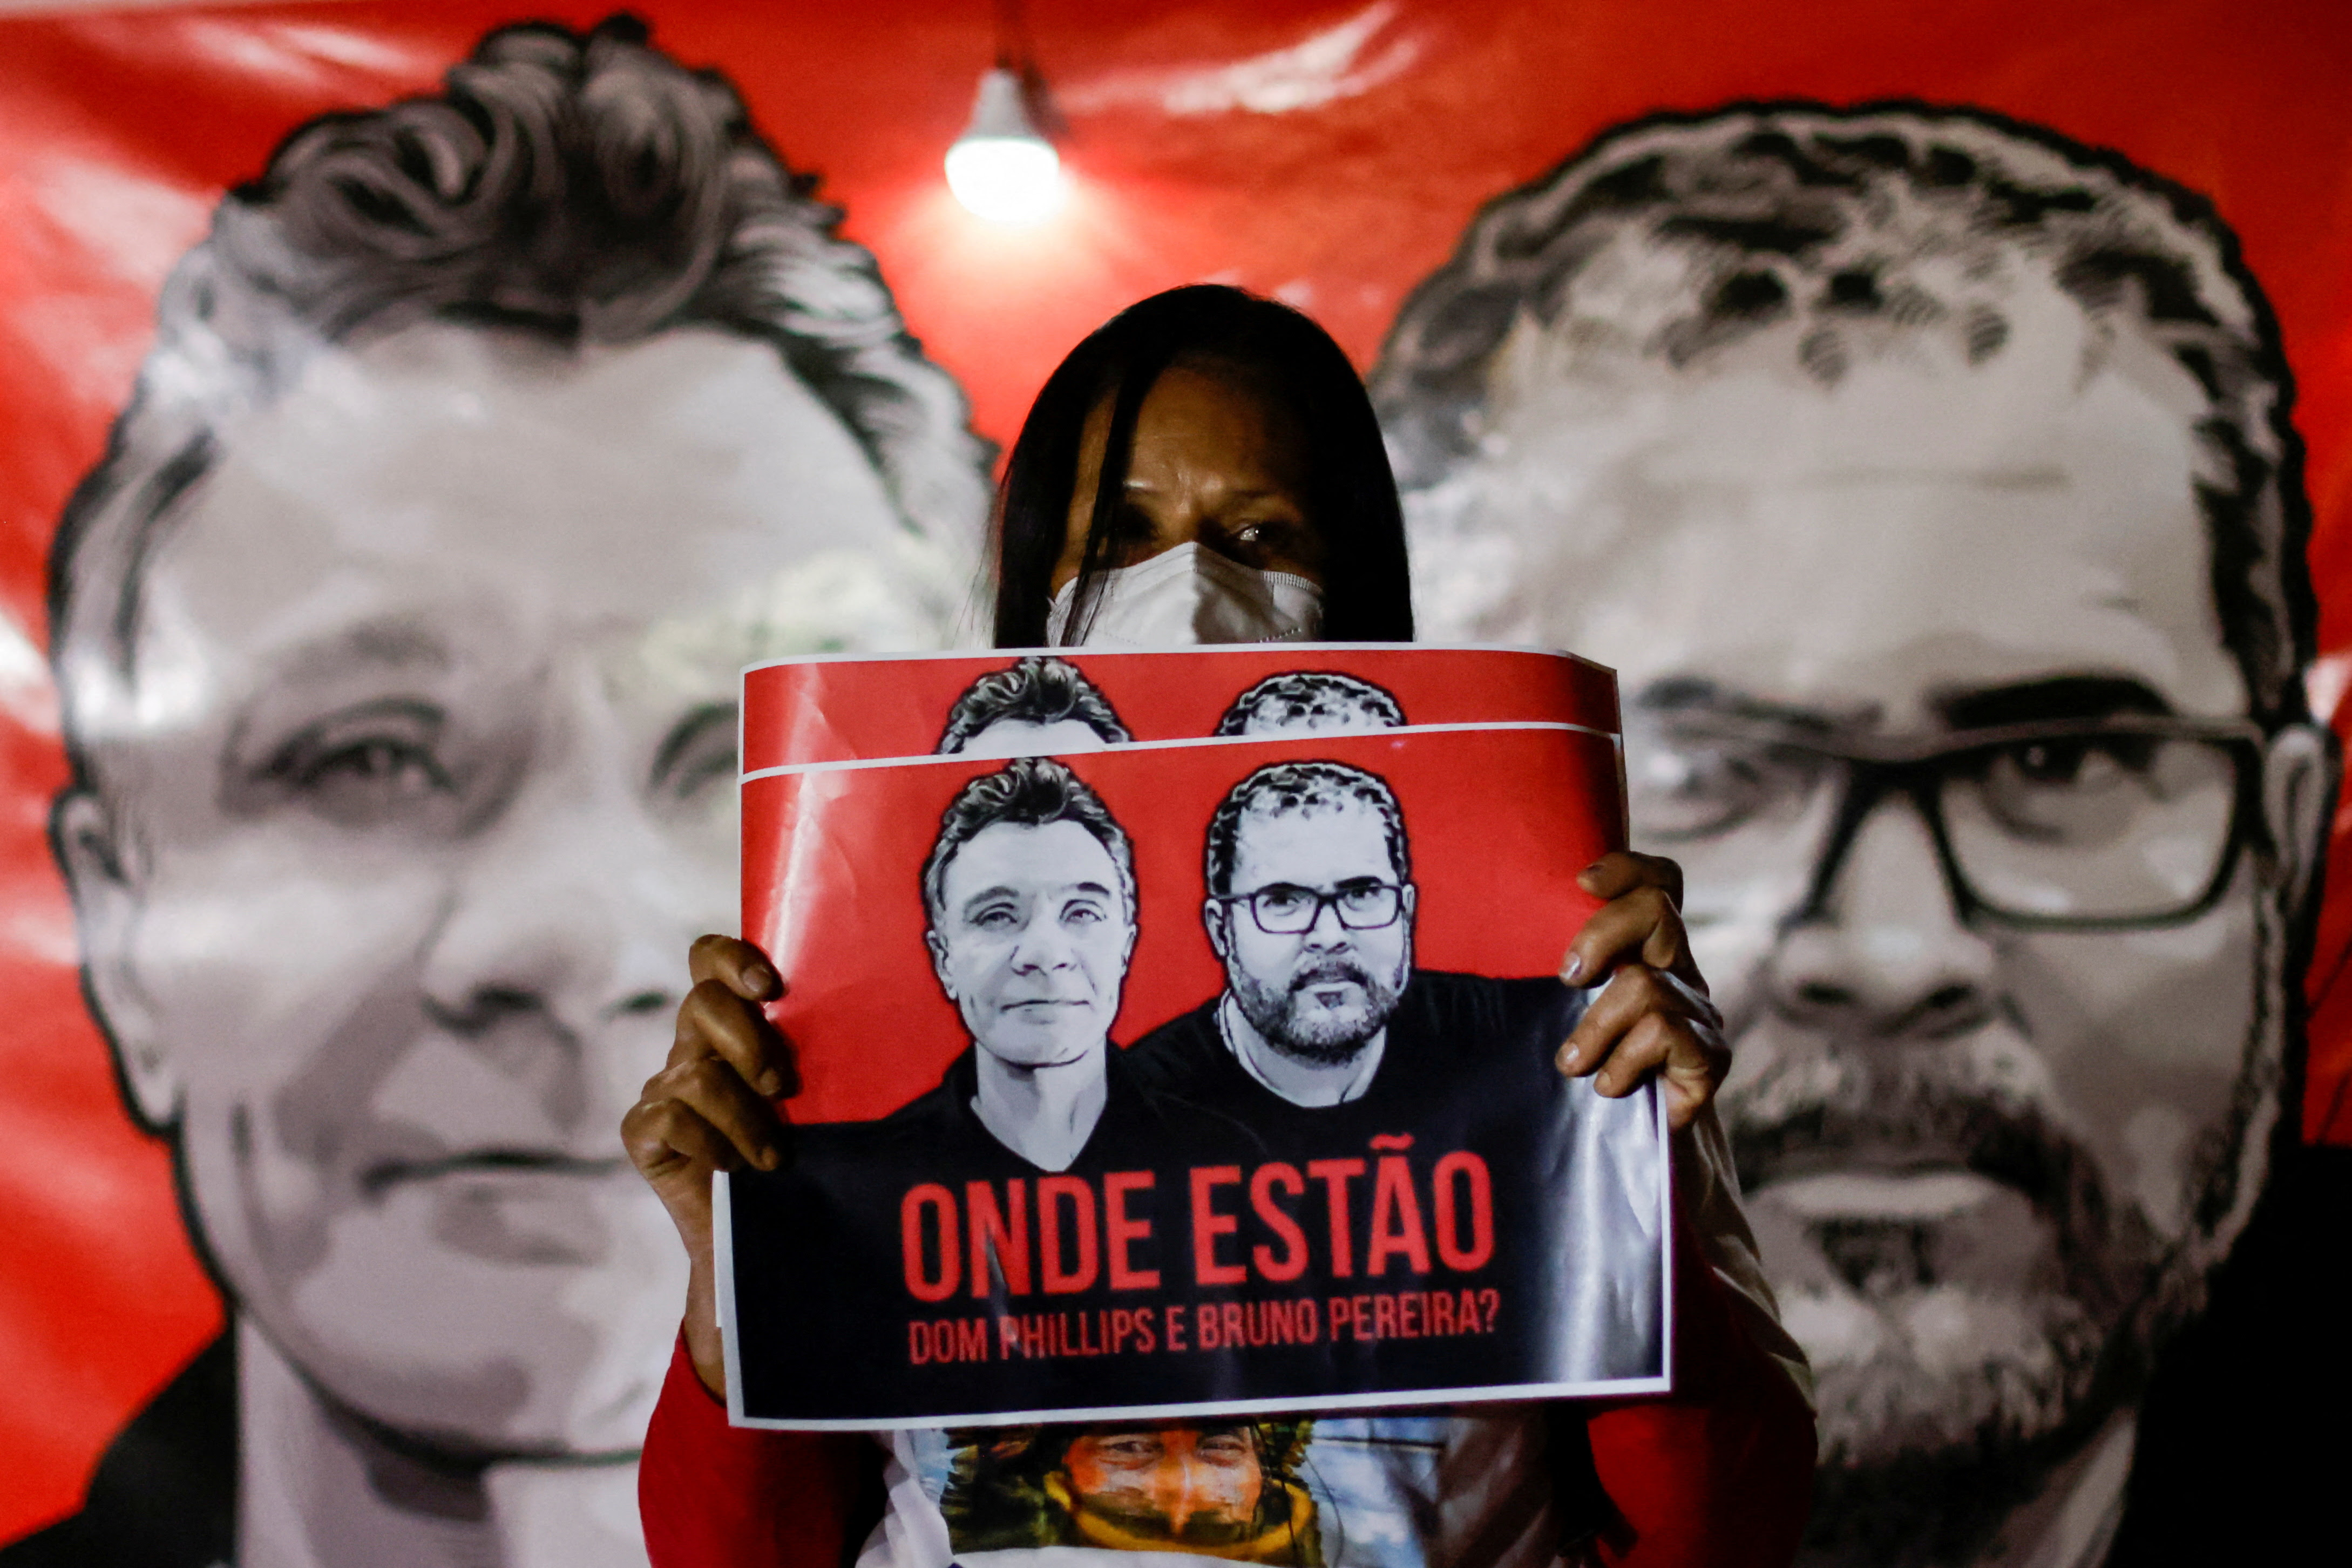 Proptestas exigiendo la aparición de Phillip y Araújo Pereira (REUTERS/Ueslei Marcelino/File Photo)